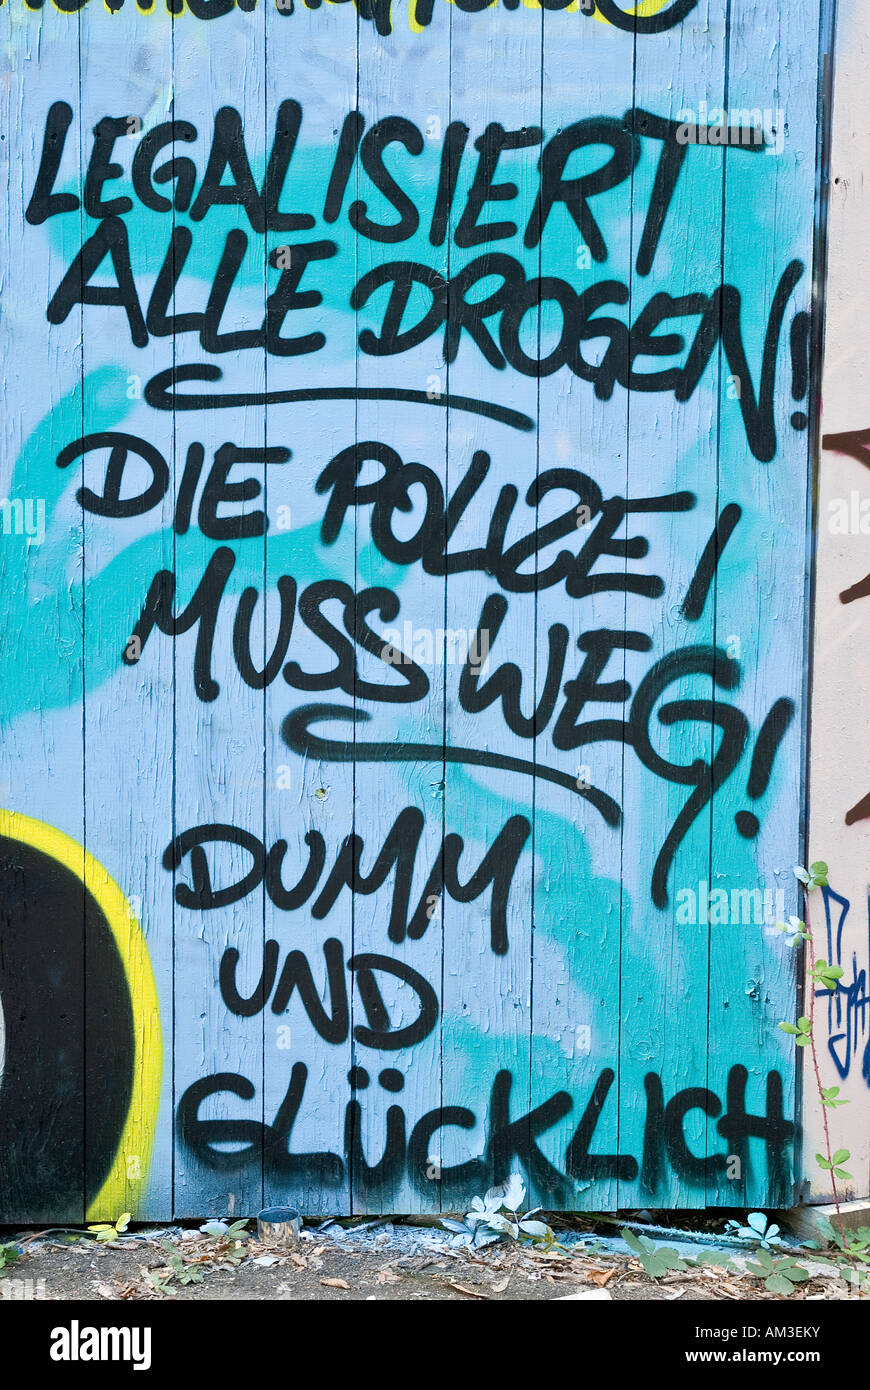 Graffiti on a site fence, Munich, Bavaria, Germany Stock Photo